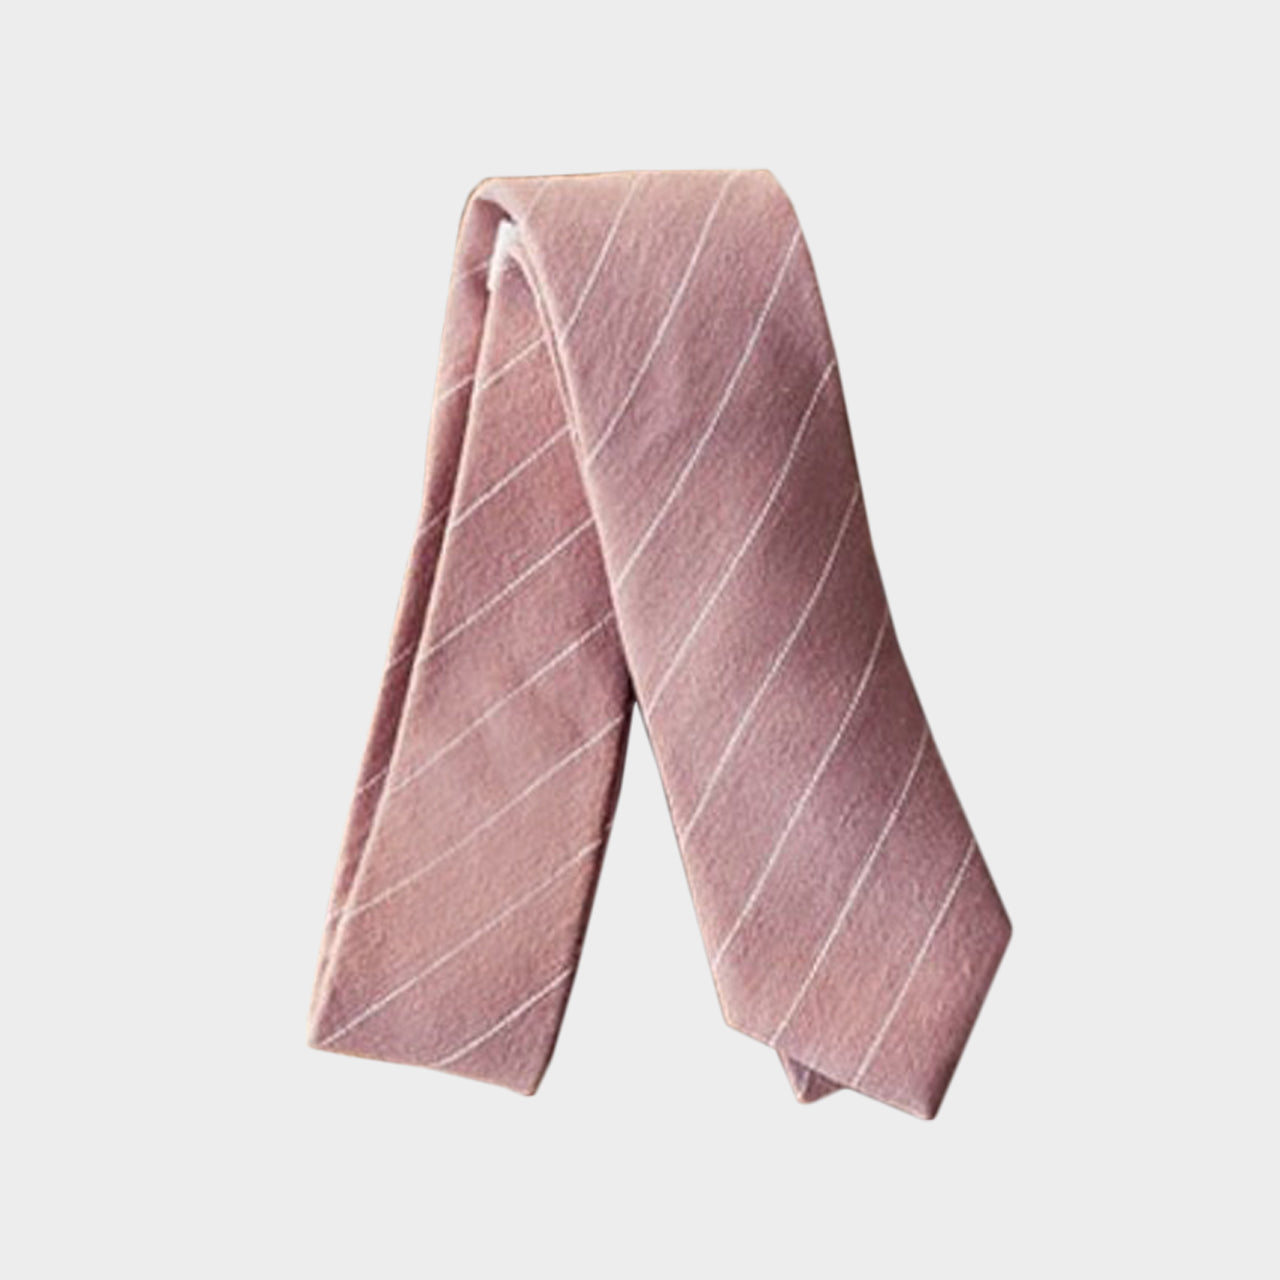 IKE - Men's Tie